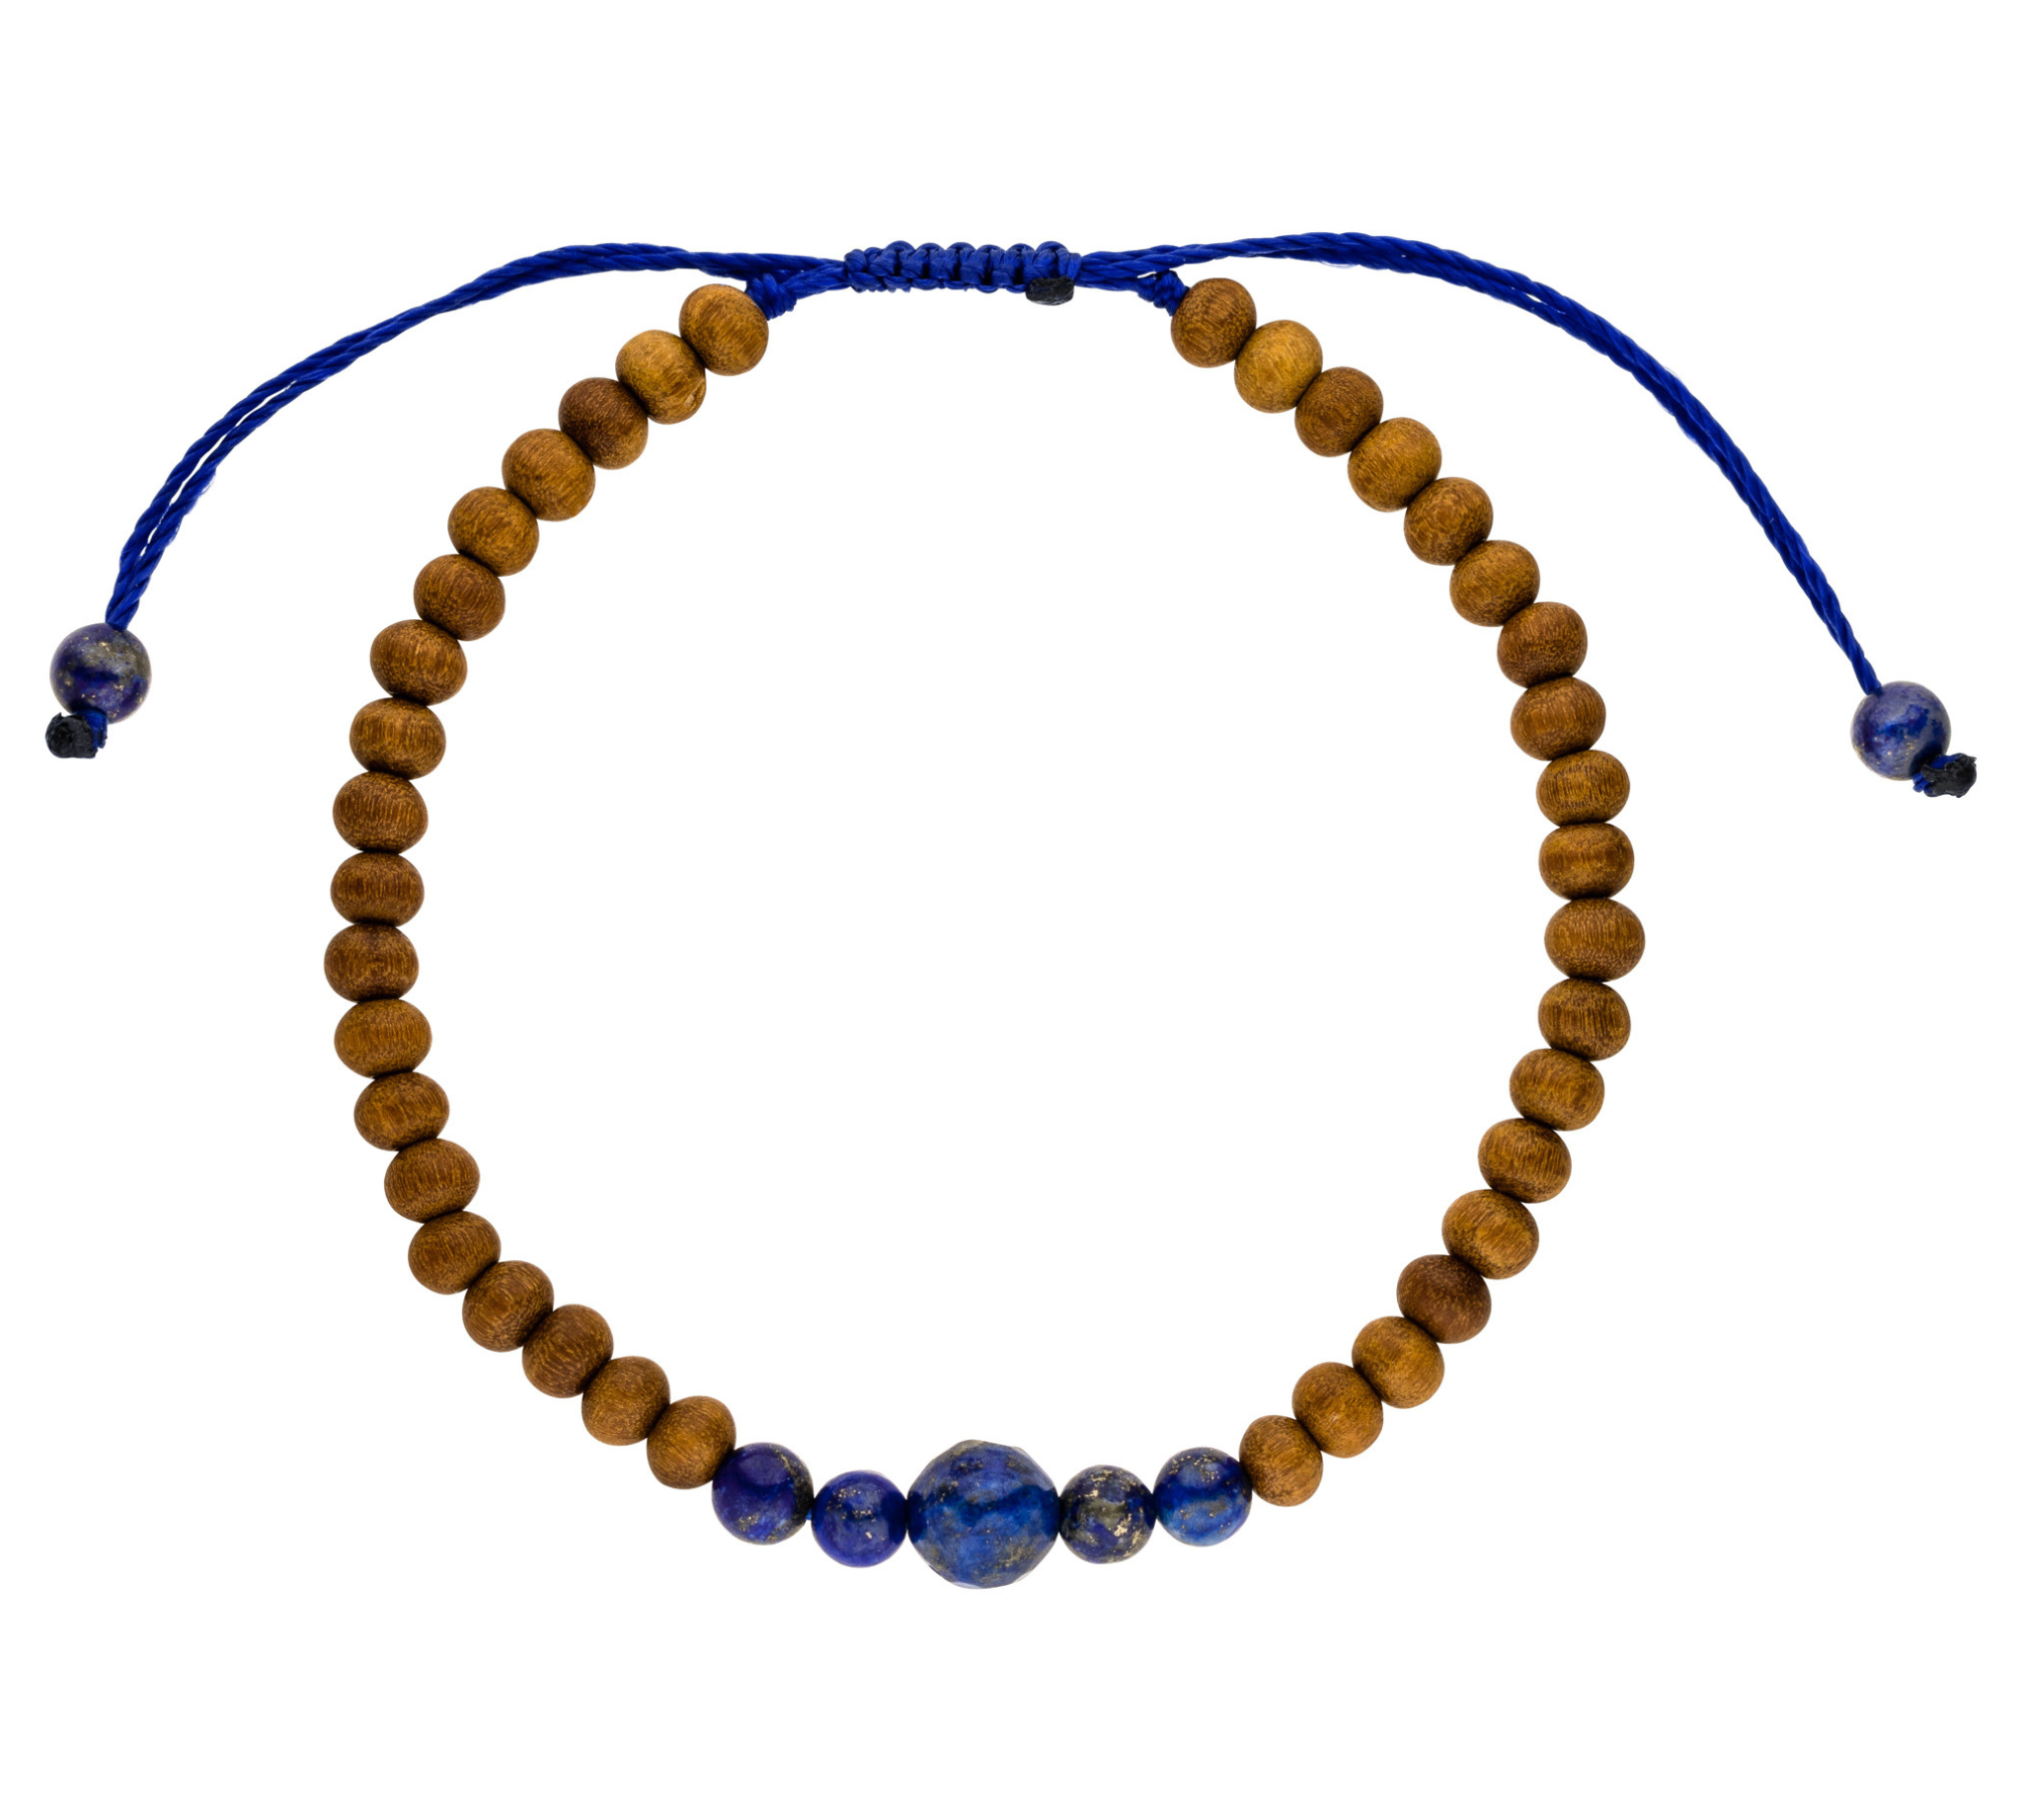 Chakra Armband Sitrnchakra mit blauen Lapislazuli Steinen und beruhigenden Sandelholz Perlen. Einheitsgröße. 